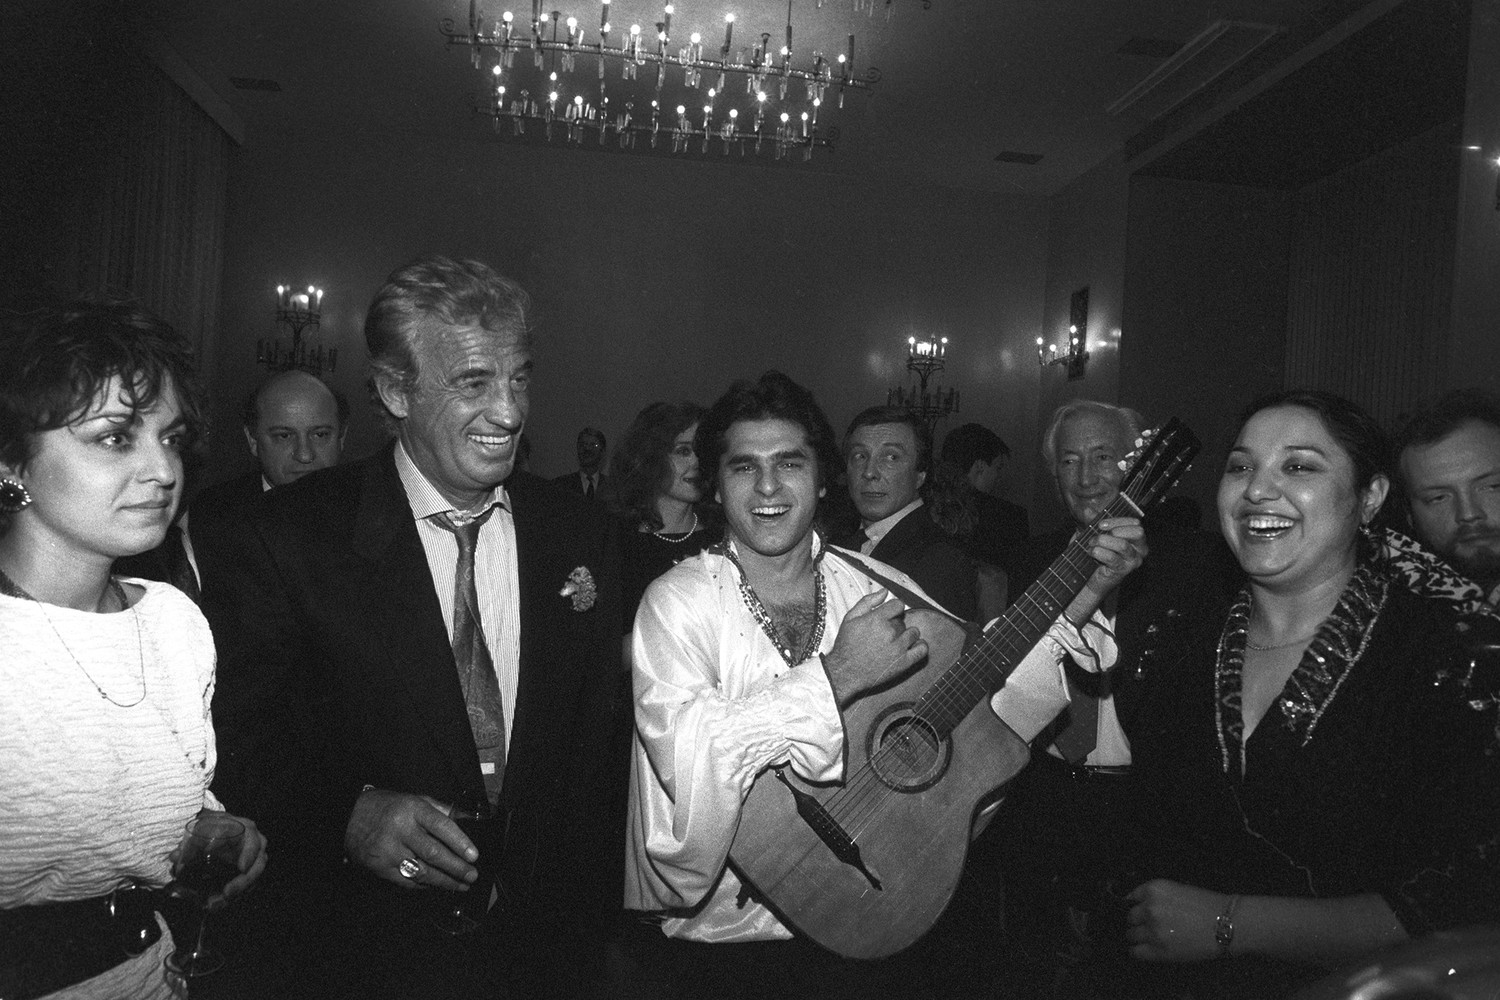  Французский актер Жан-Поль Бельмондо с солистами цыганского ансамбля в гостинице «Советская» во время аудиенция в Москву, 1989 год 